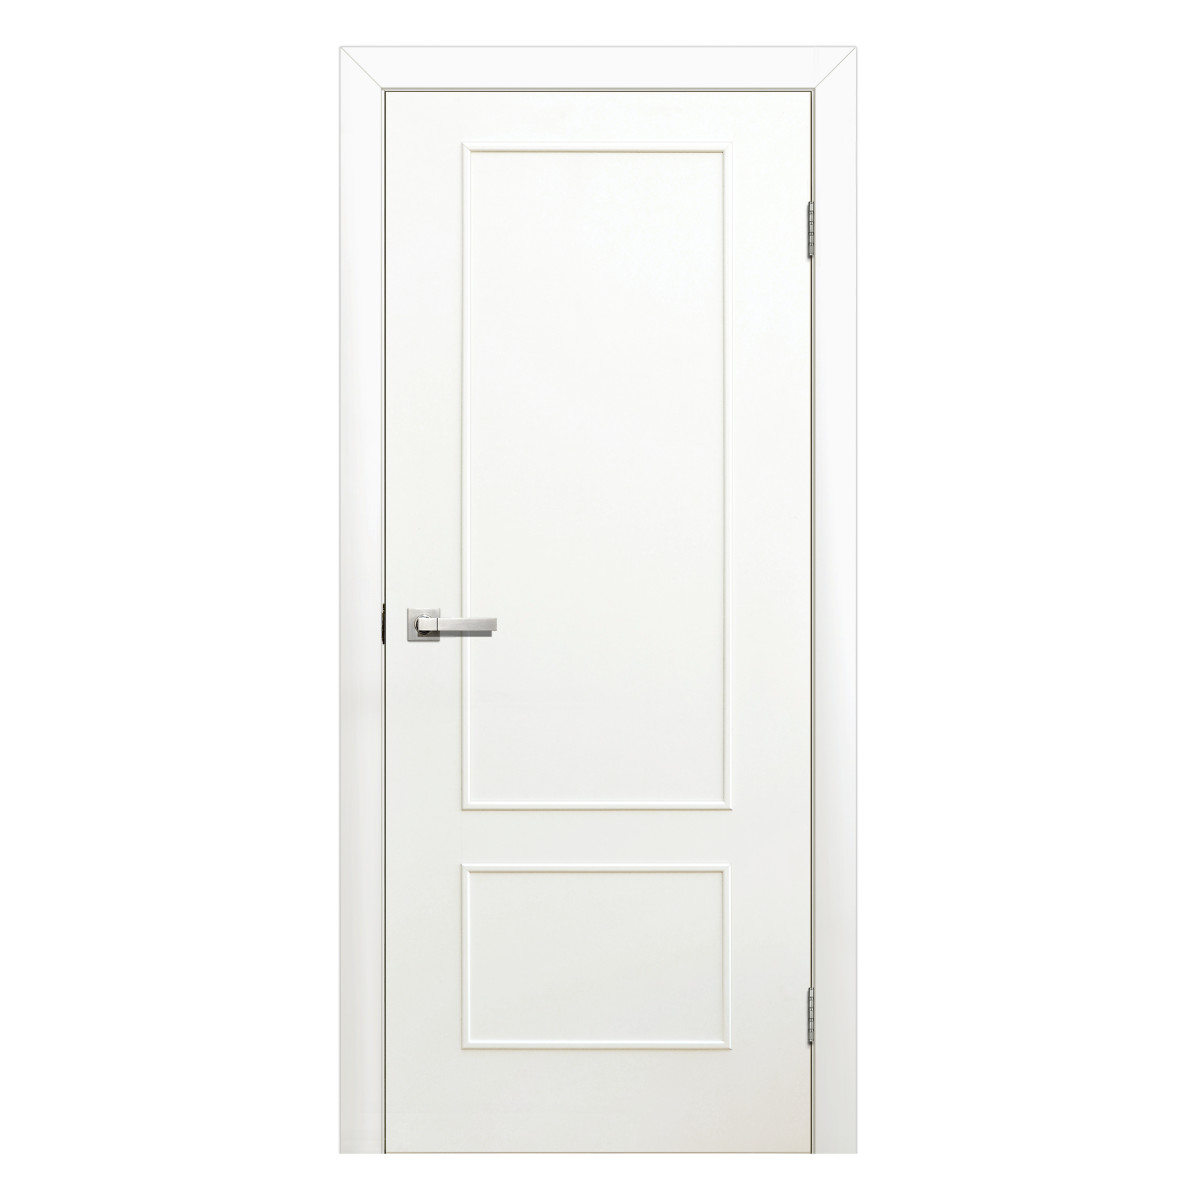 Дверь межкомнатная глухая ламинированная Классика 80x200 см цвет белый